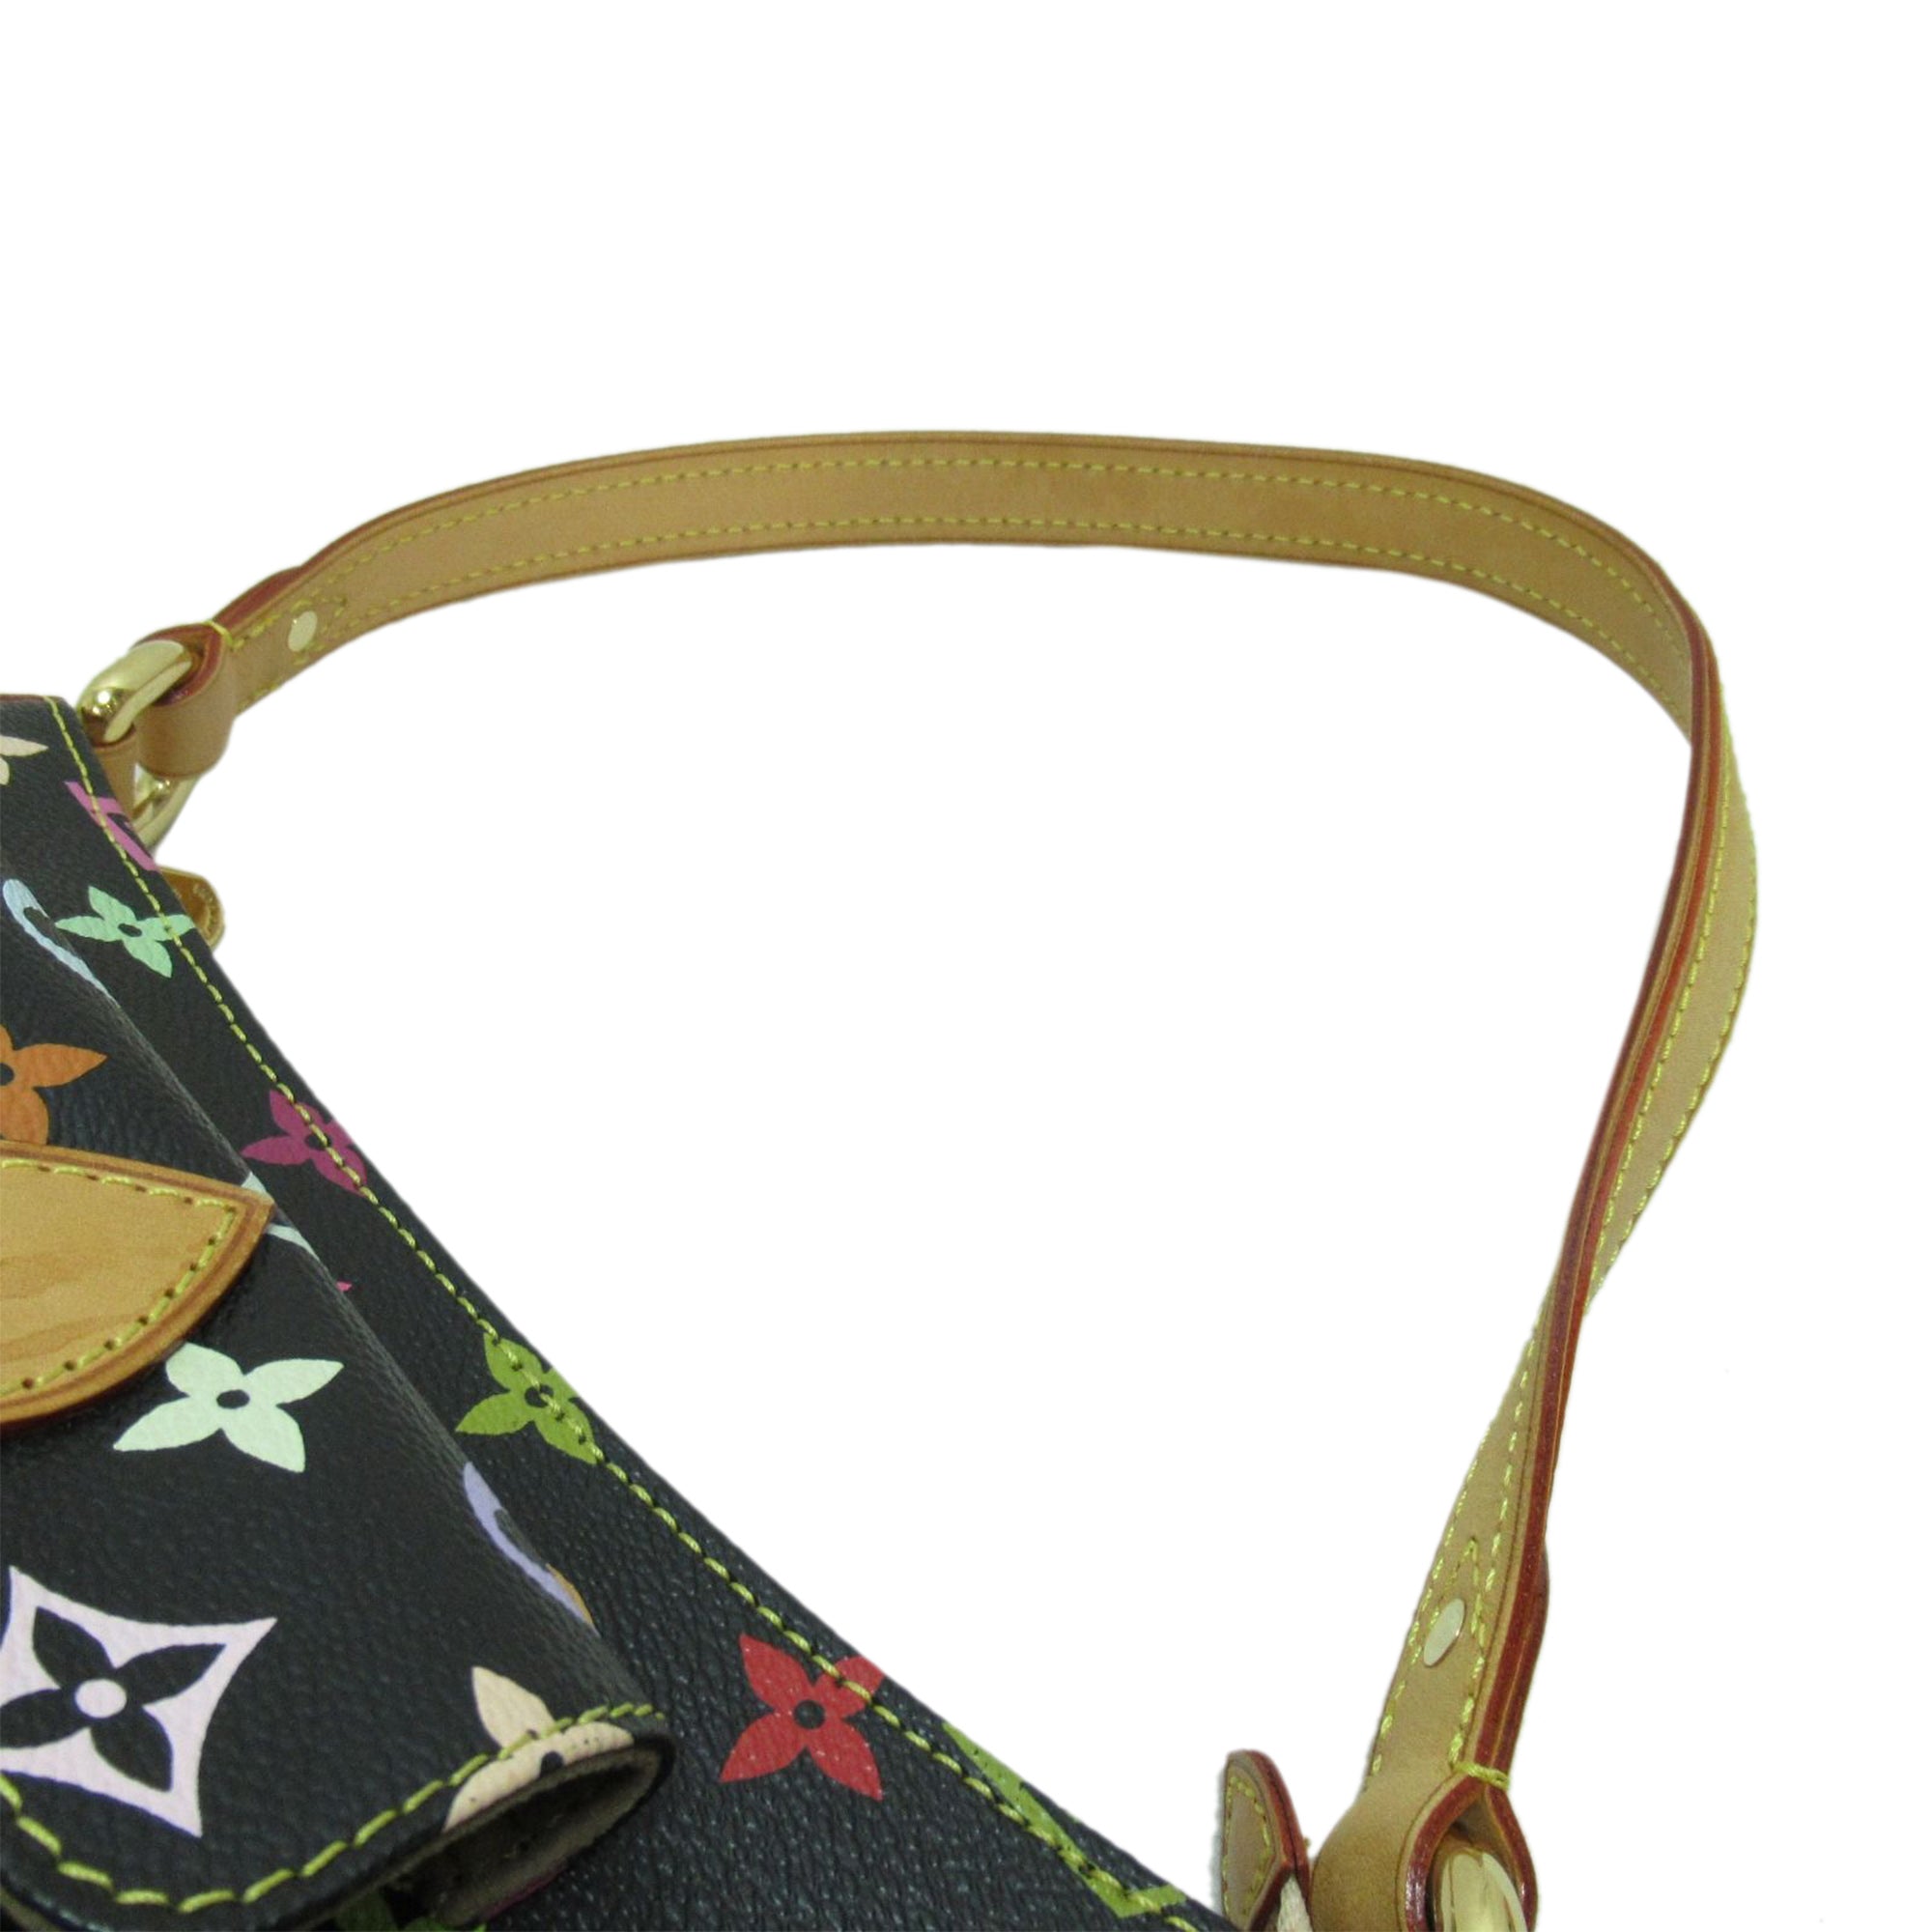 LOUIS VUITTON Black Multicolour Monogram Eliza Shoulder Handbag